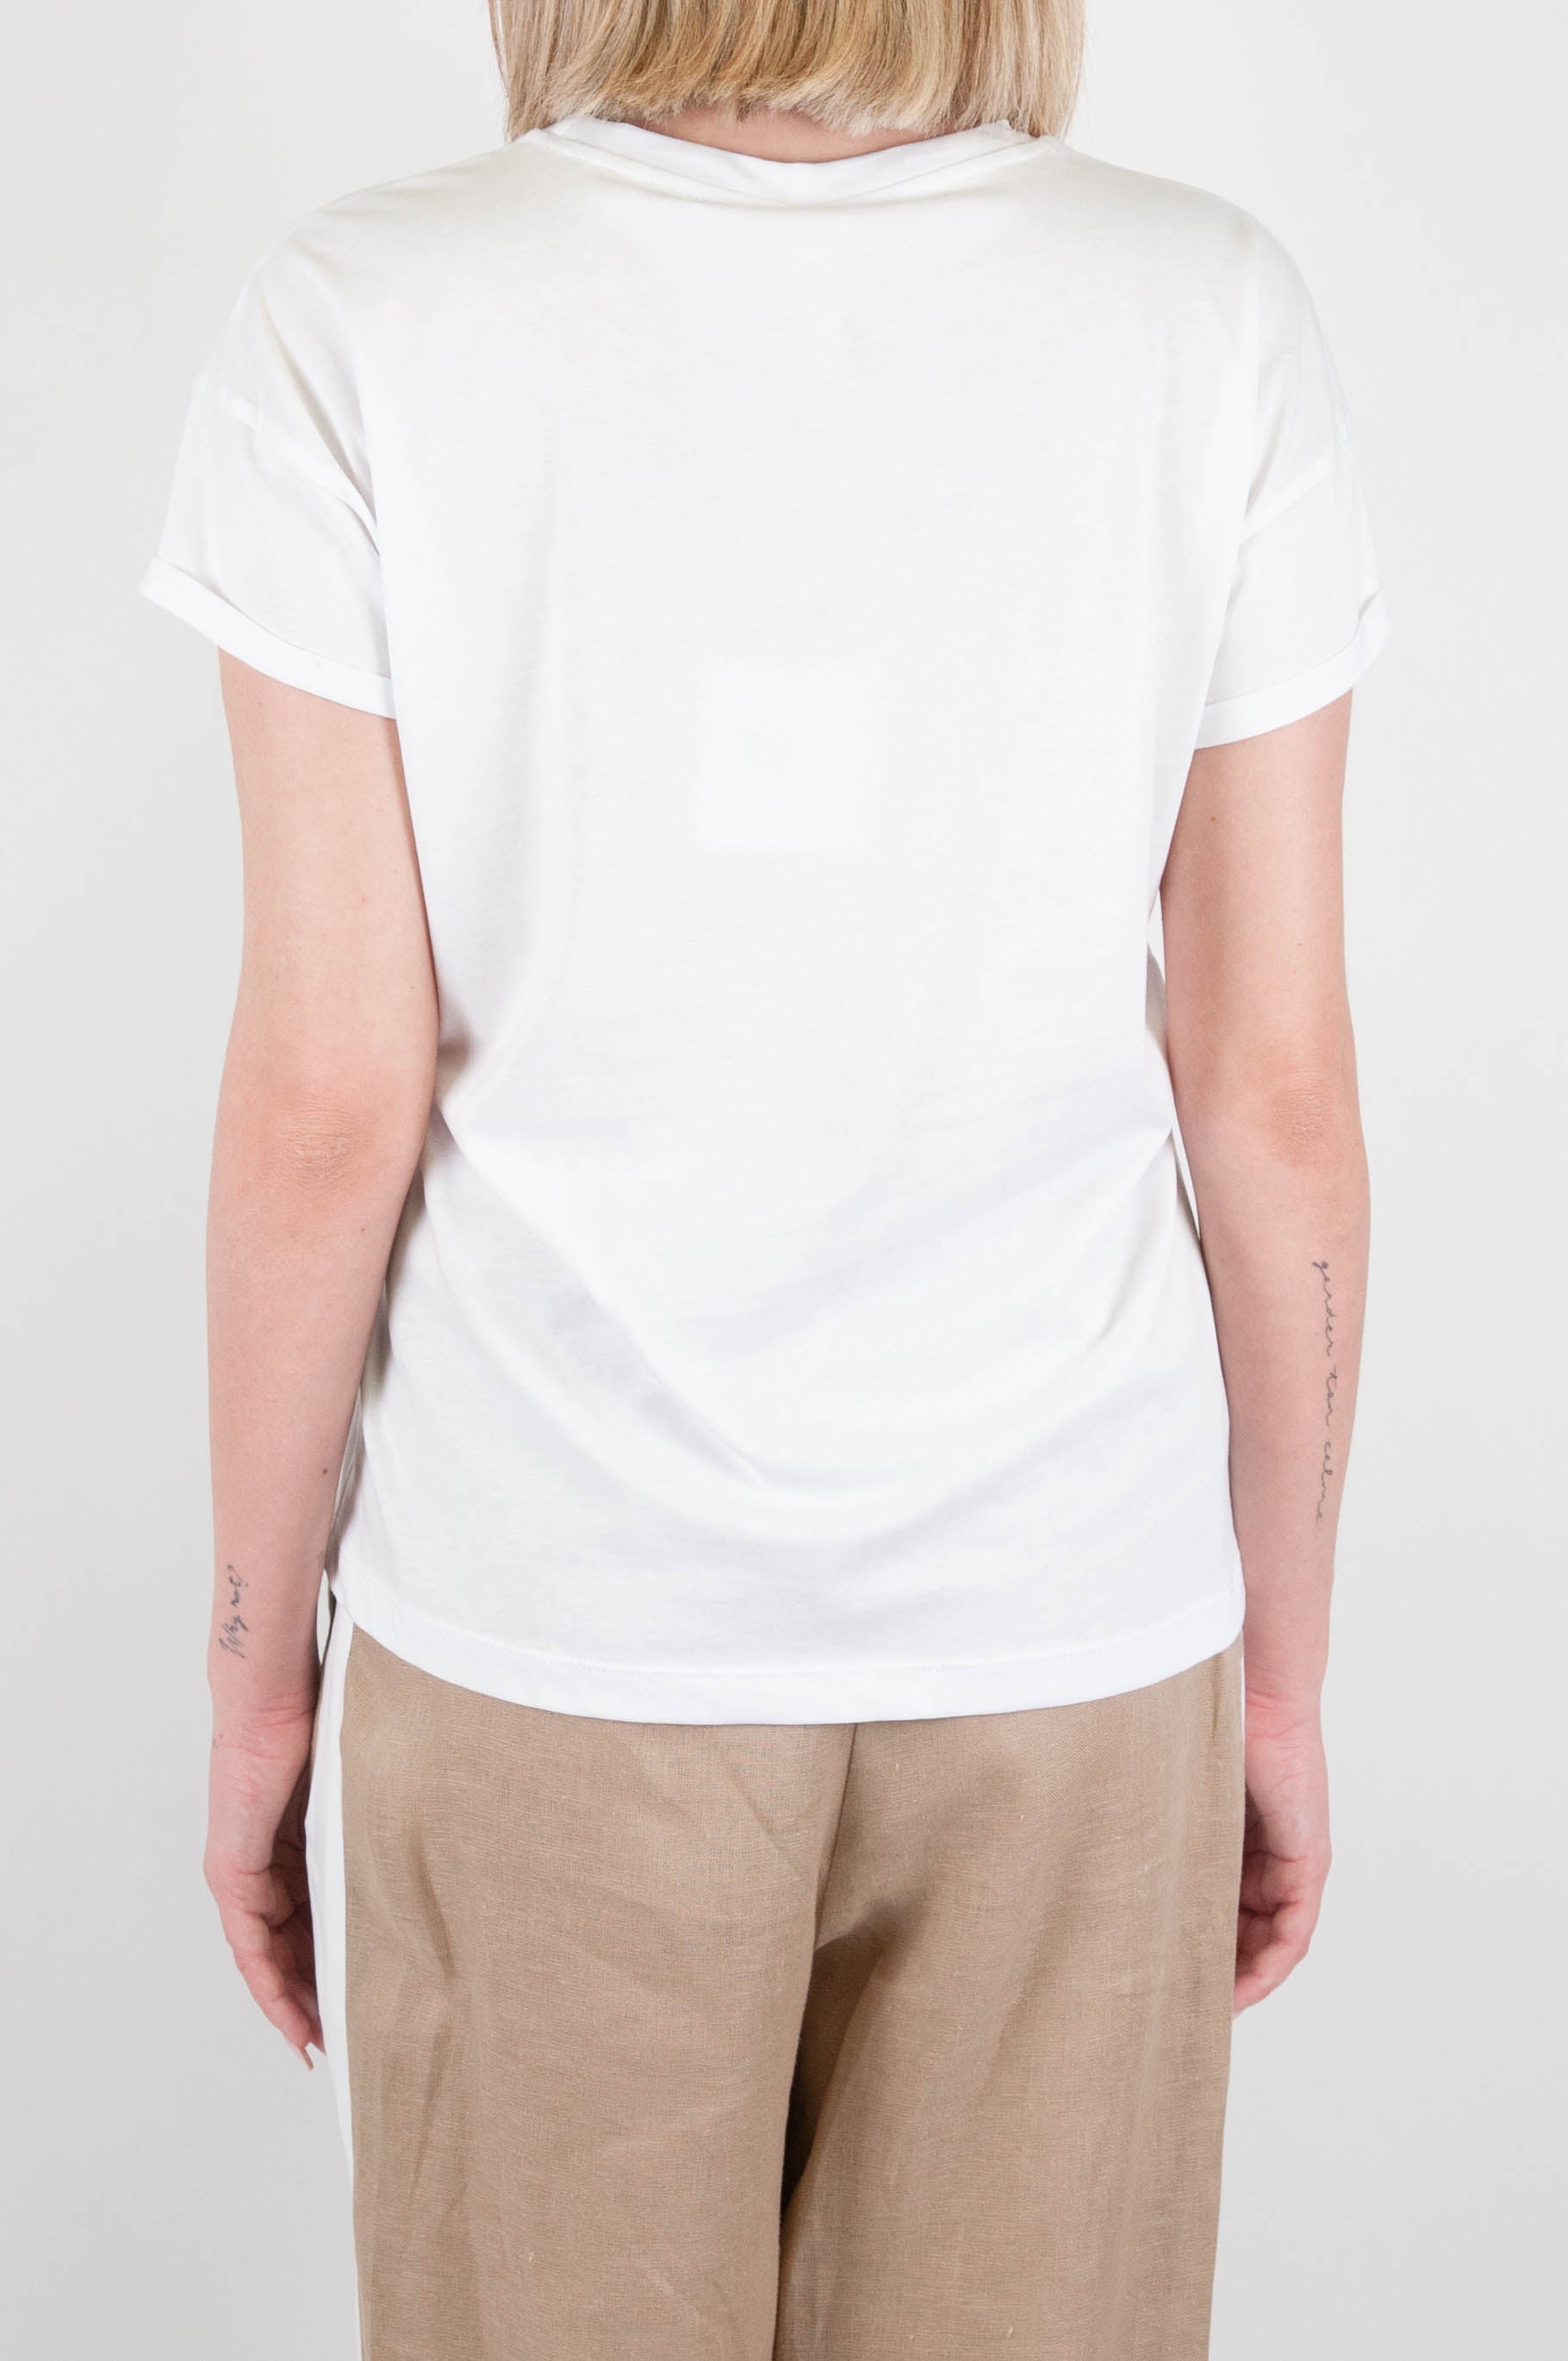 Tensione in - T-shirt in cotone stampa ciabatta con borchie